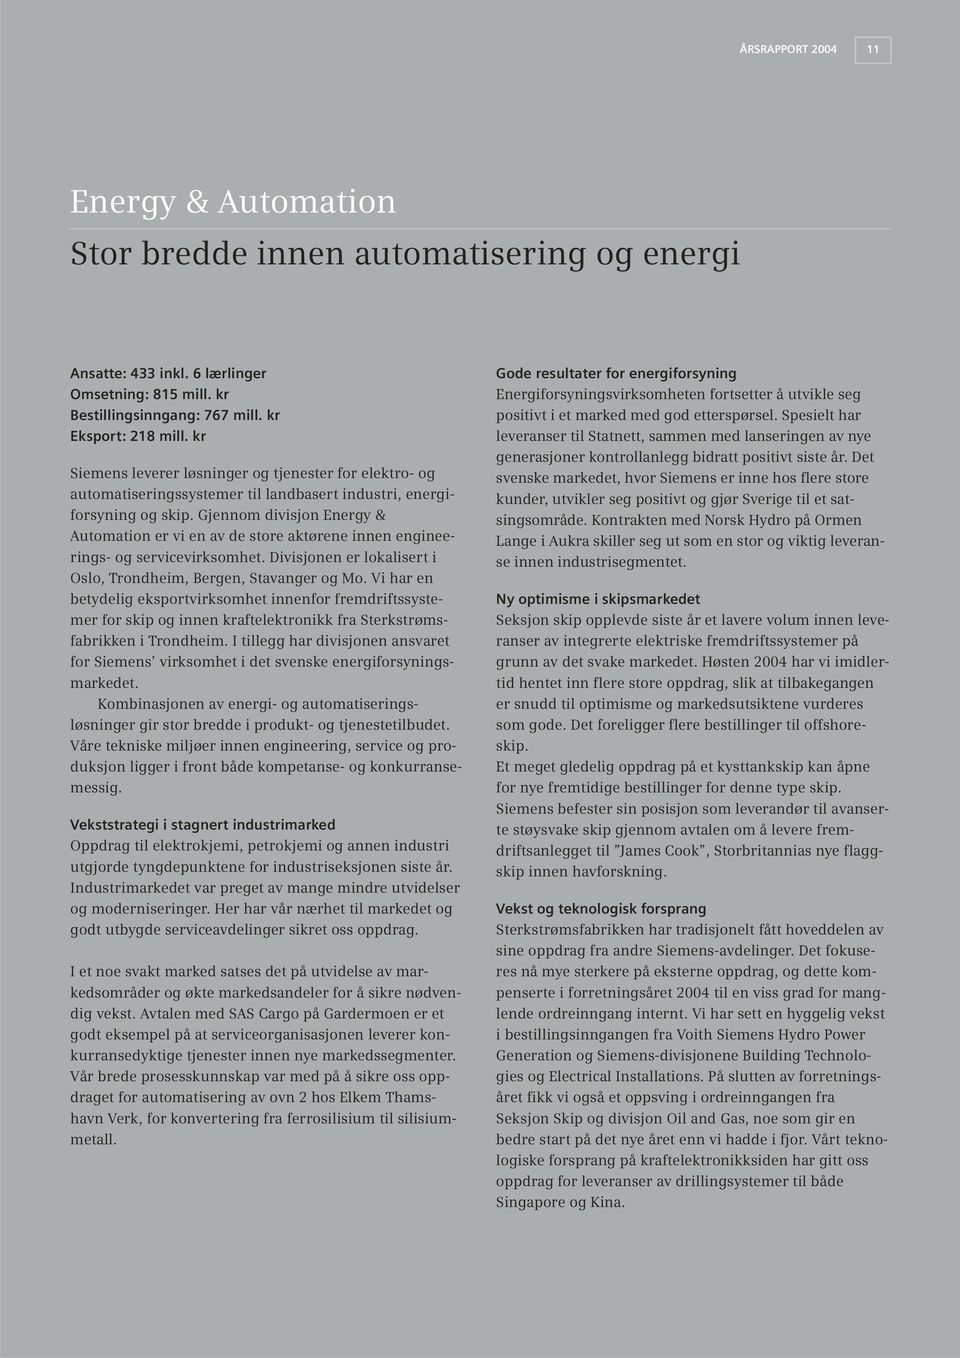 Gjennom divisjon Energy & Automation er vi en av de store aktørene innen engineerings- og servicevirksomhet. Divisjonen er lokalisert i Oslo, Trondheim, Bergen, Stavanger og Mo.